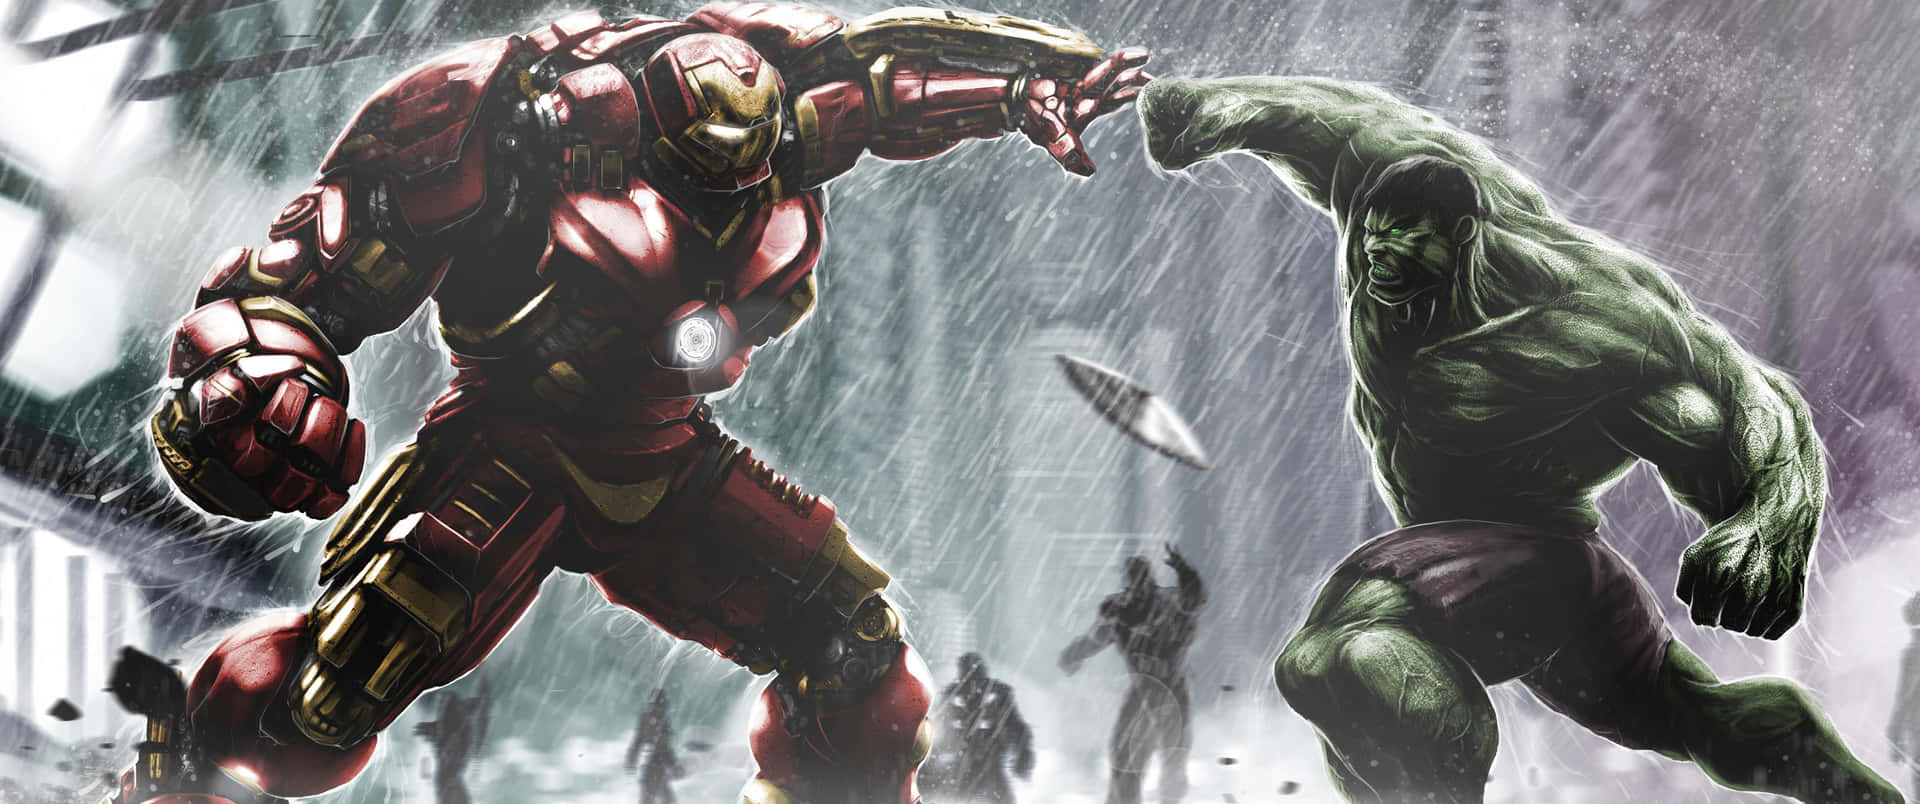 Hulke Iron Man Che Combattono Sotto La Pioggia.